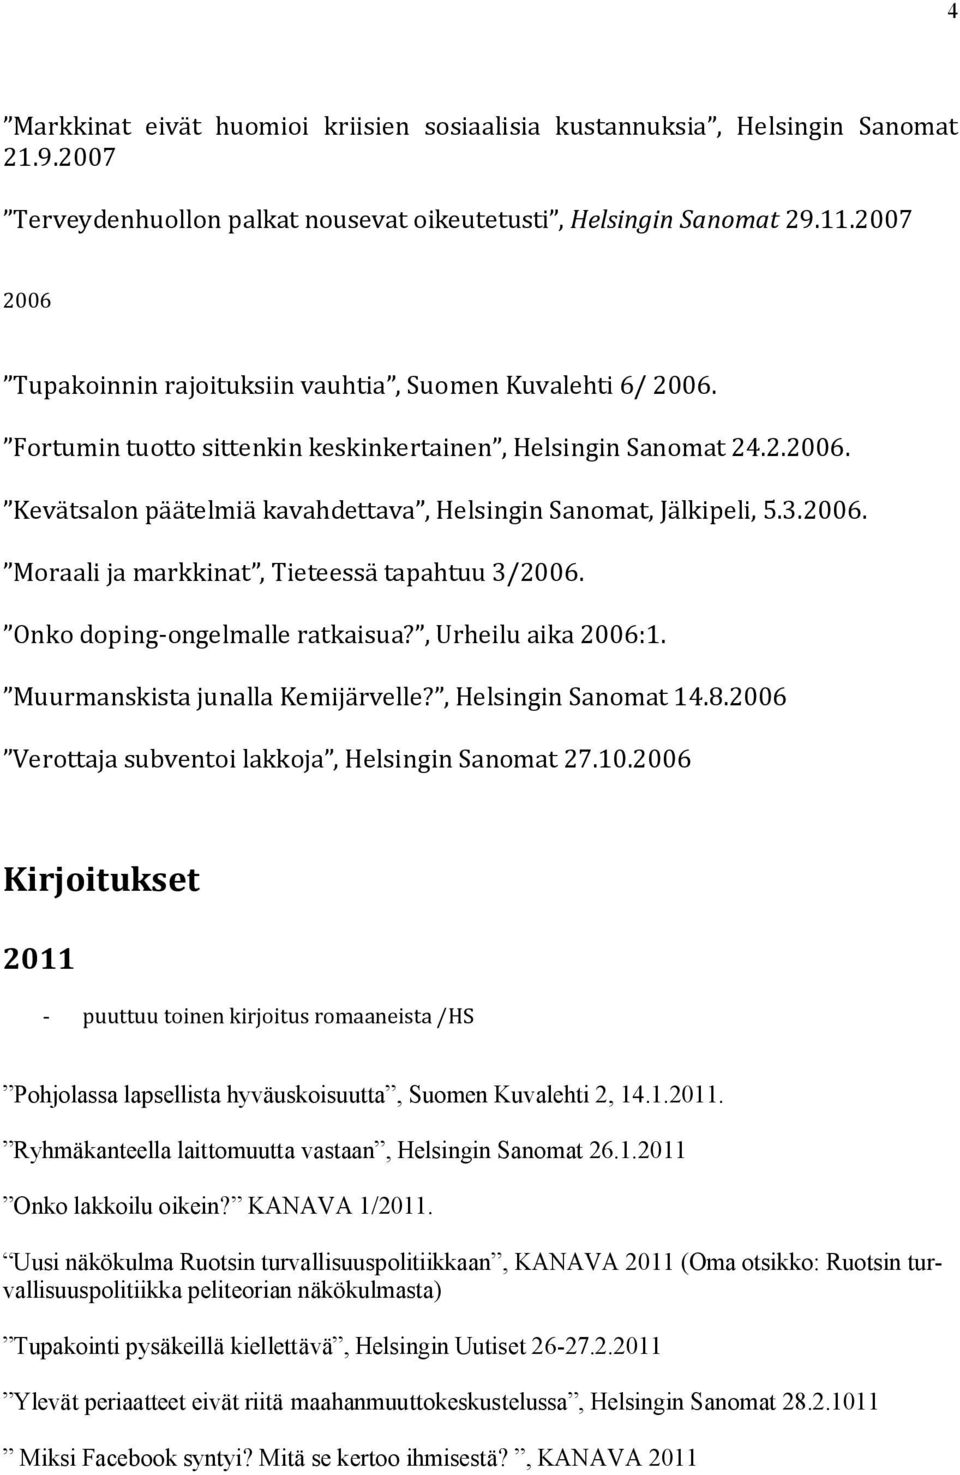 3.2006. Moraali ja markkinat, Tieteessä tapahtuu 3/2006. Onko doping-ongelmalle ratkaisua?, Urheilu aika 2006:1. Muurmanskista junalla Kemijärvelle?, Helsingin Sanomat 14.8.